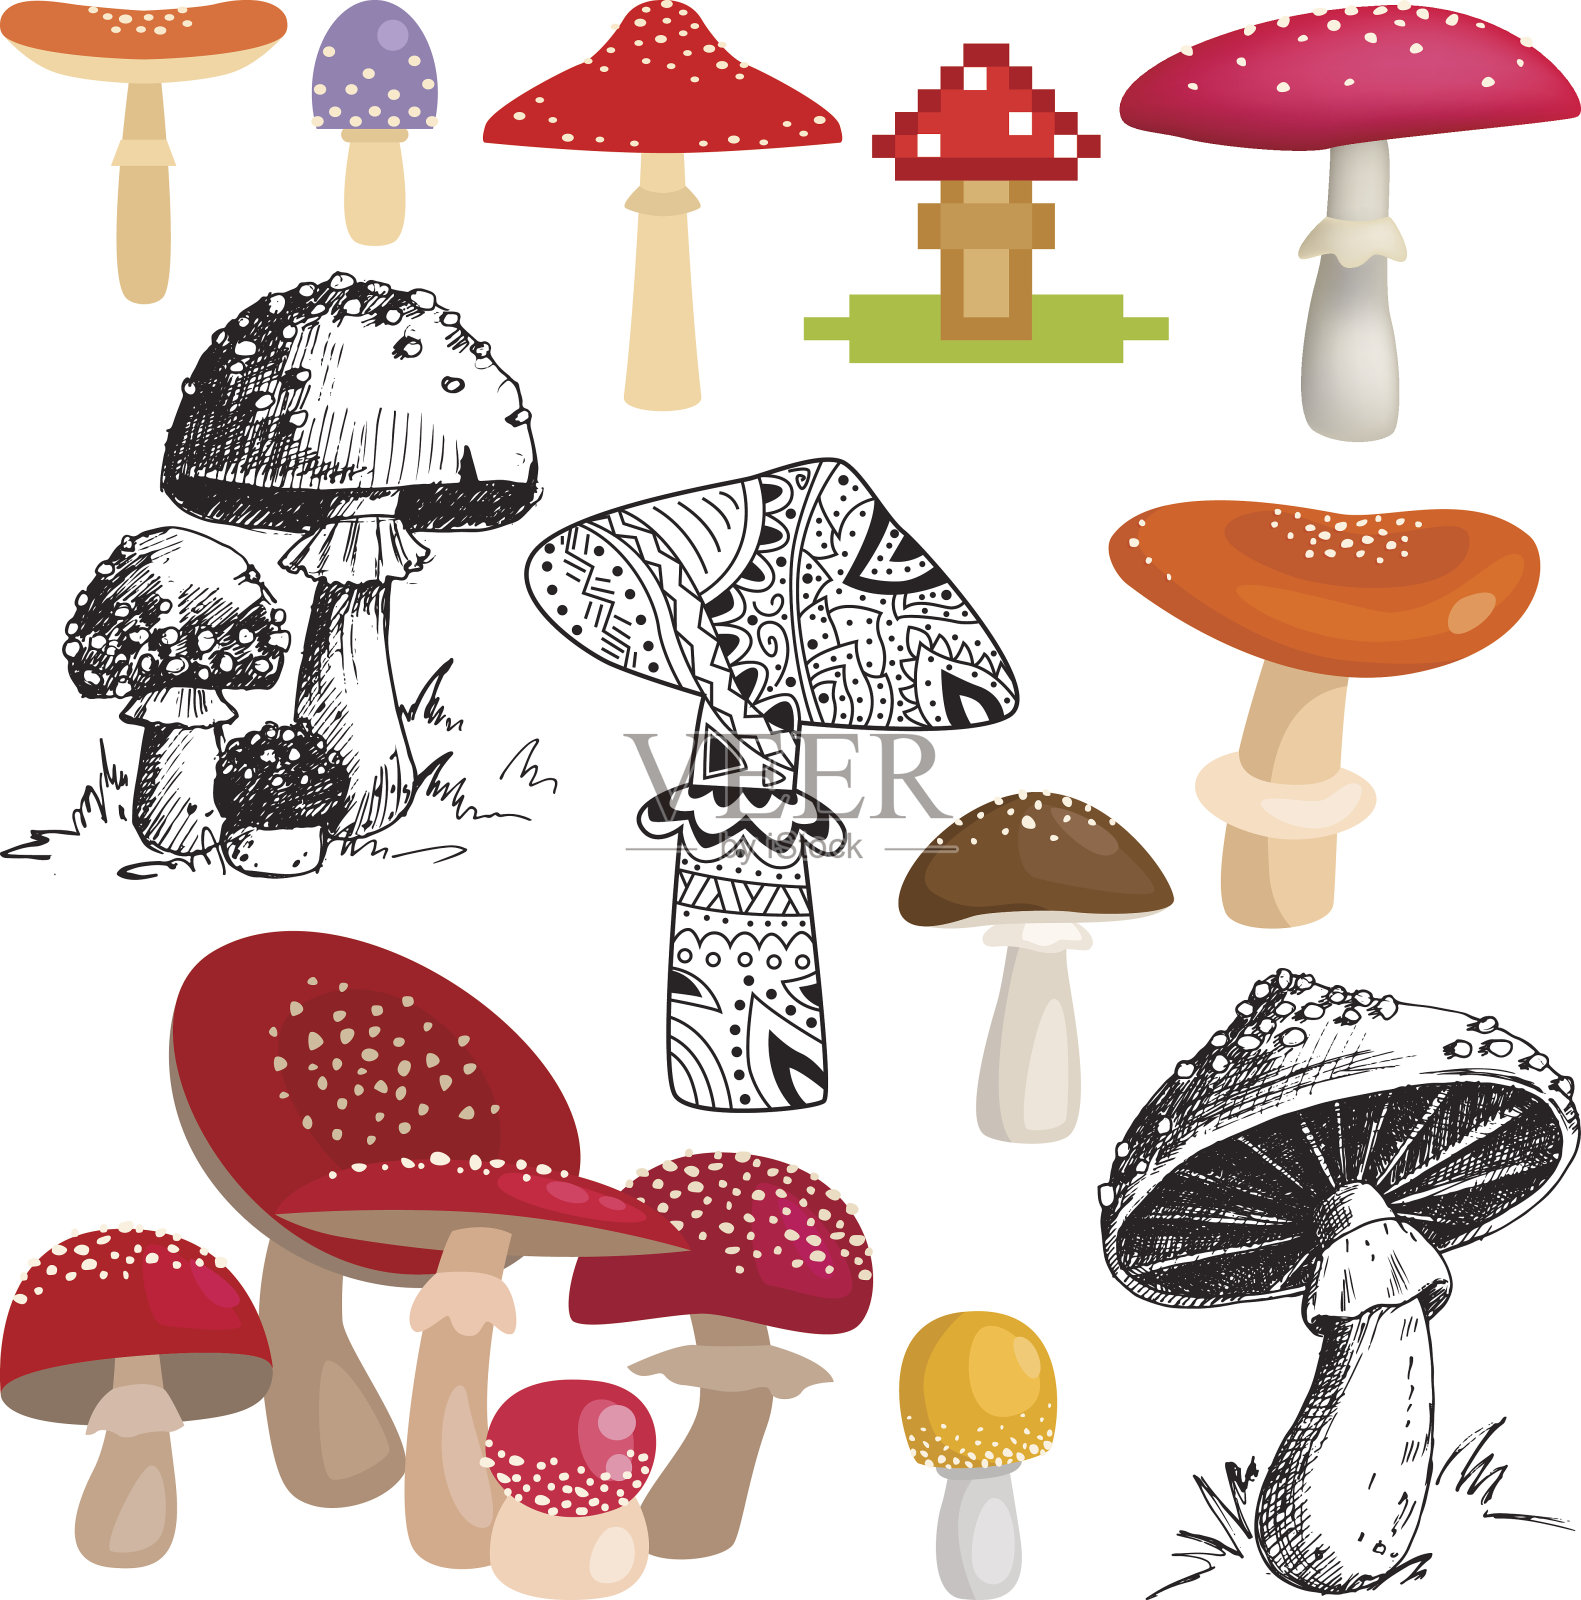 明亮不同类型的蘑菇载体。设计元素图片